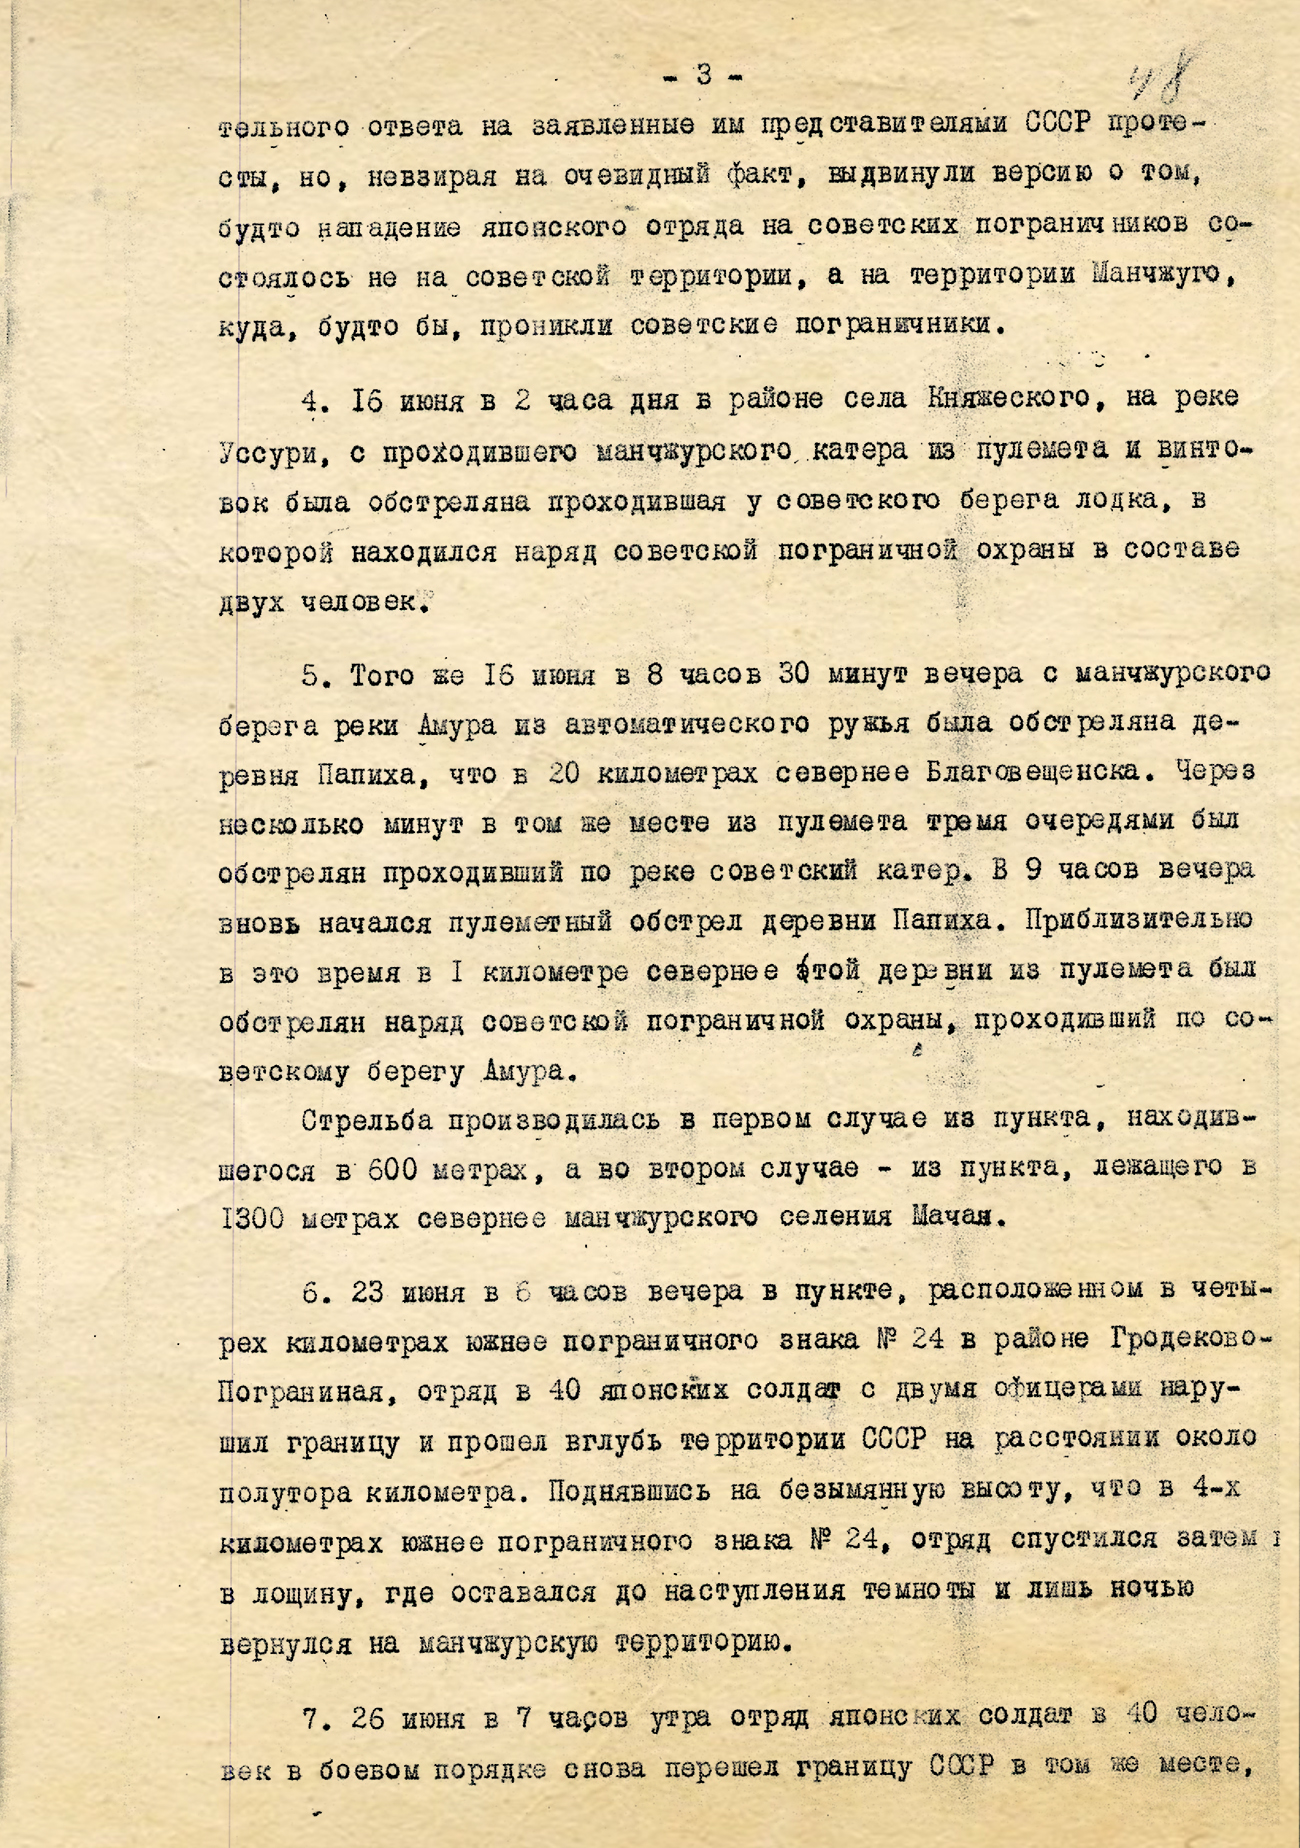 Нота Советского Правительства министру иностранных дел Японии, Его Превосходительству господину Коки Хирота 1 июля 1935 года